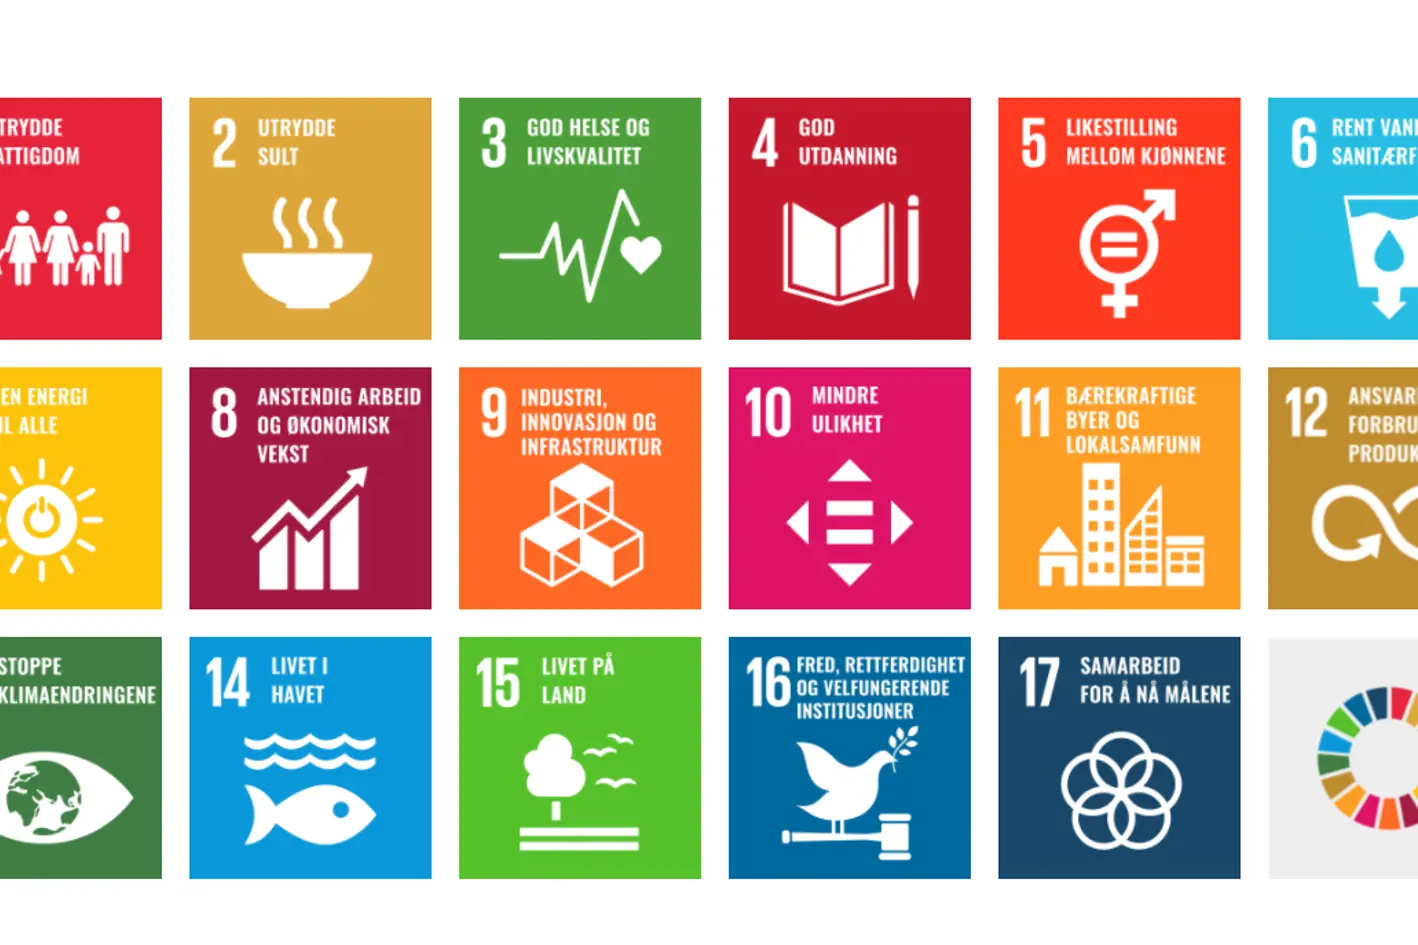 Illustrasjon. Oversikt over FNs 17 bærekraftsmål vist med ikoner og tekst. 